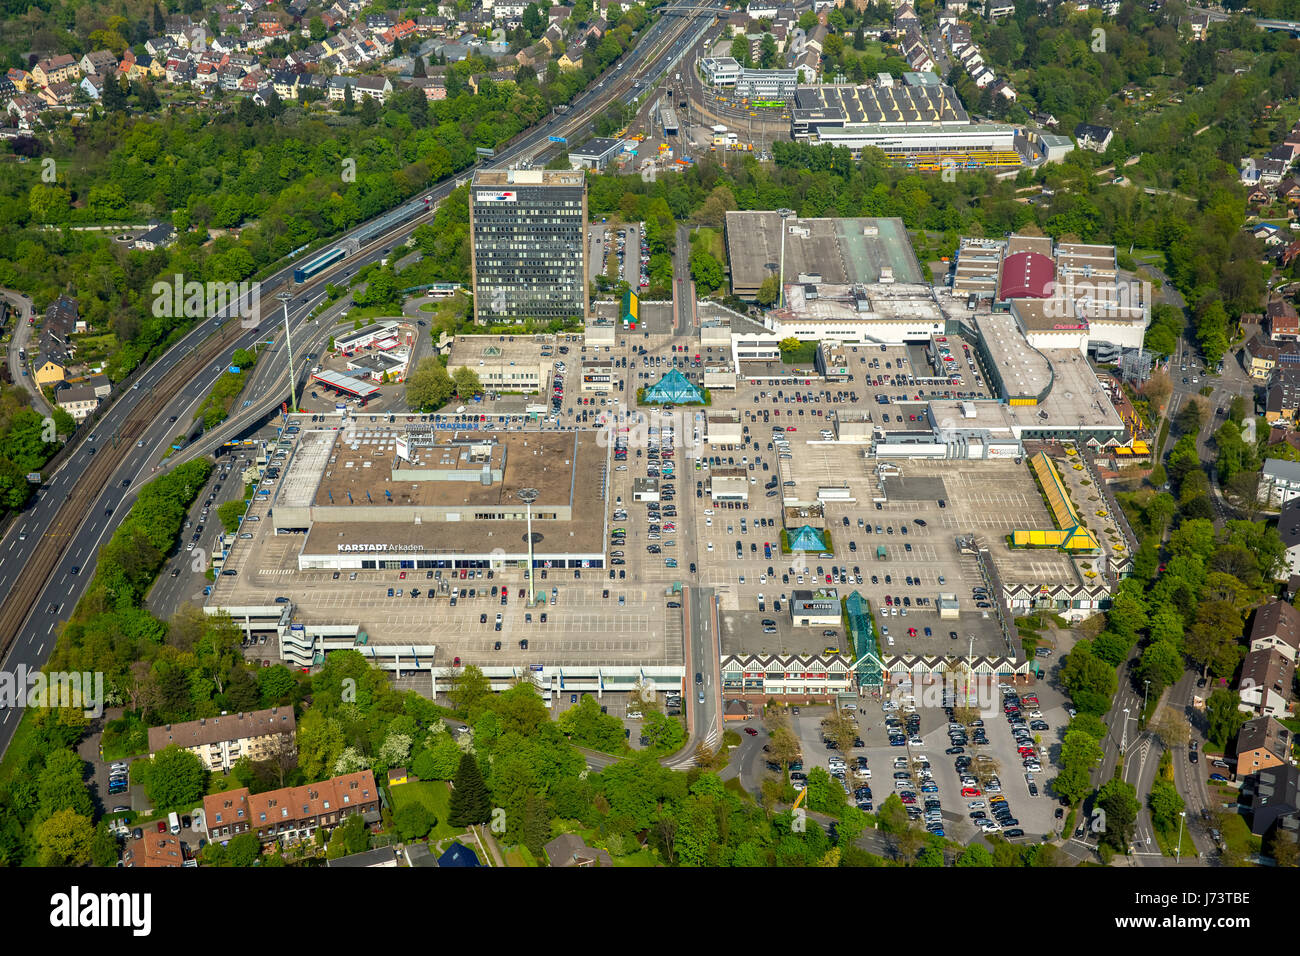 Centro commerciale sull'A40, centro Rhine-Ruhr, Max-Halbach-Straße, Mülheim an der Ruhr, la zona della Ruhr, Renania settentrionale-Vestfalia, Germania,Einkaufszentrum un Foto Stock